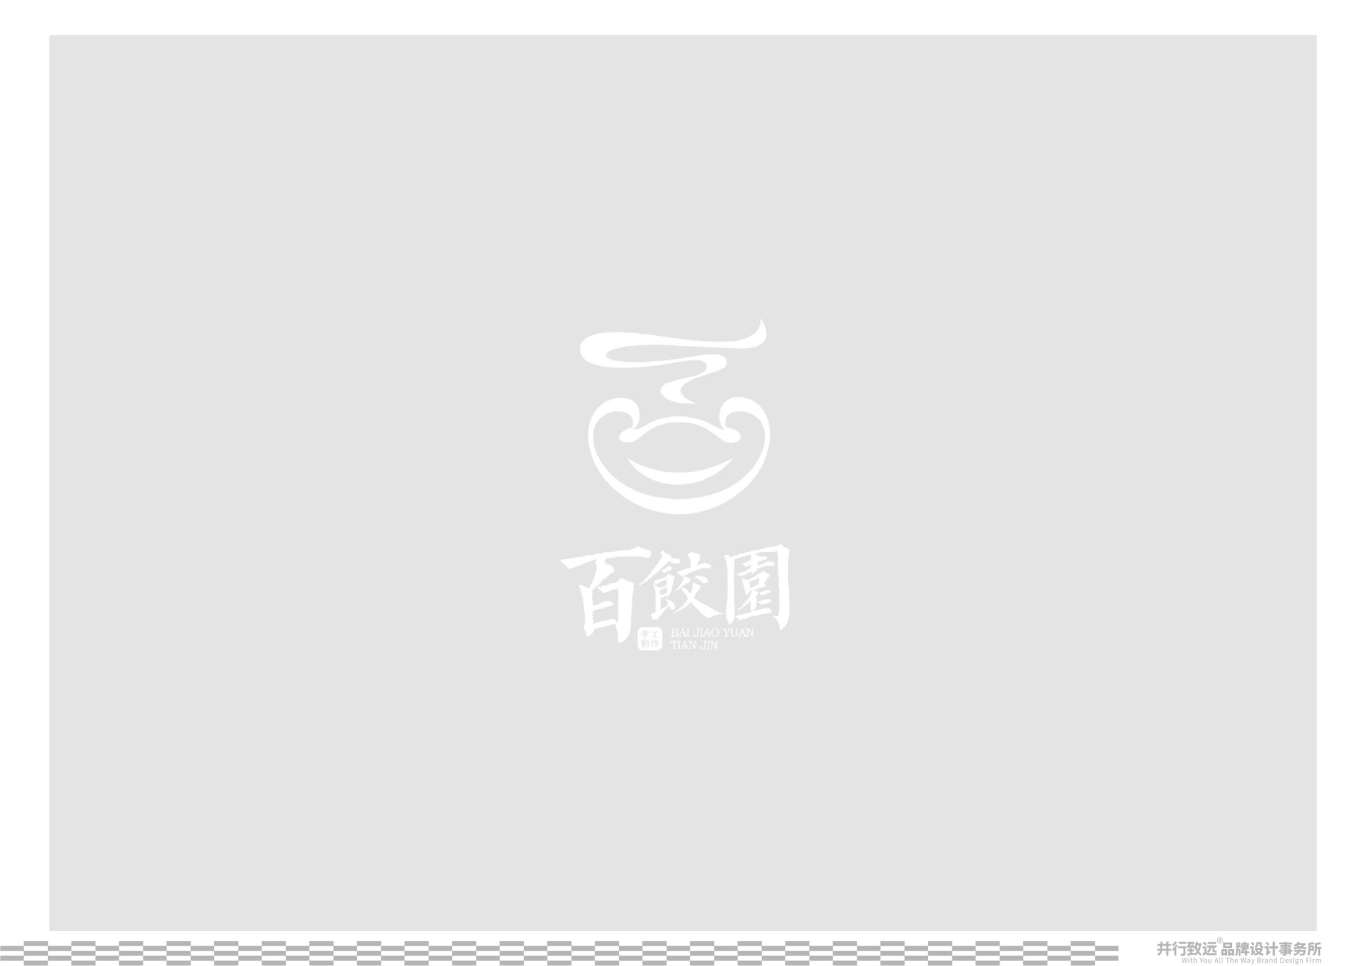 天津百餃園logo升級設計圖29